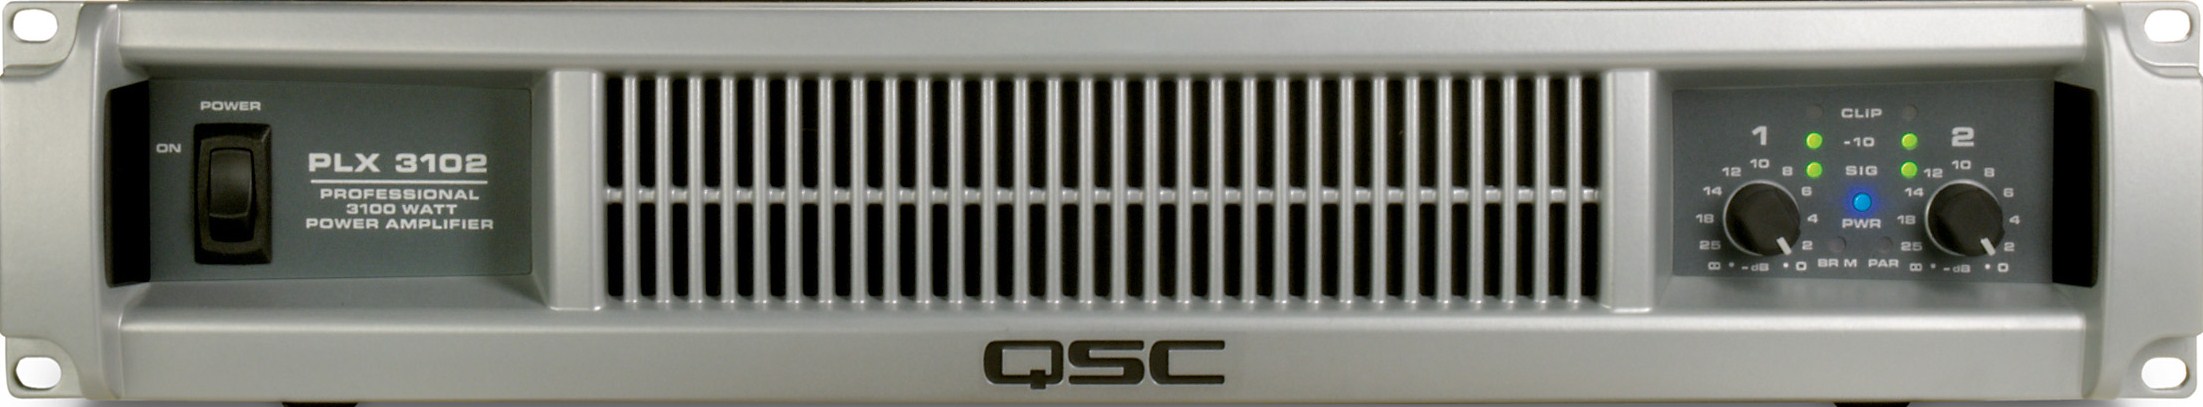 QSC PLX 3102